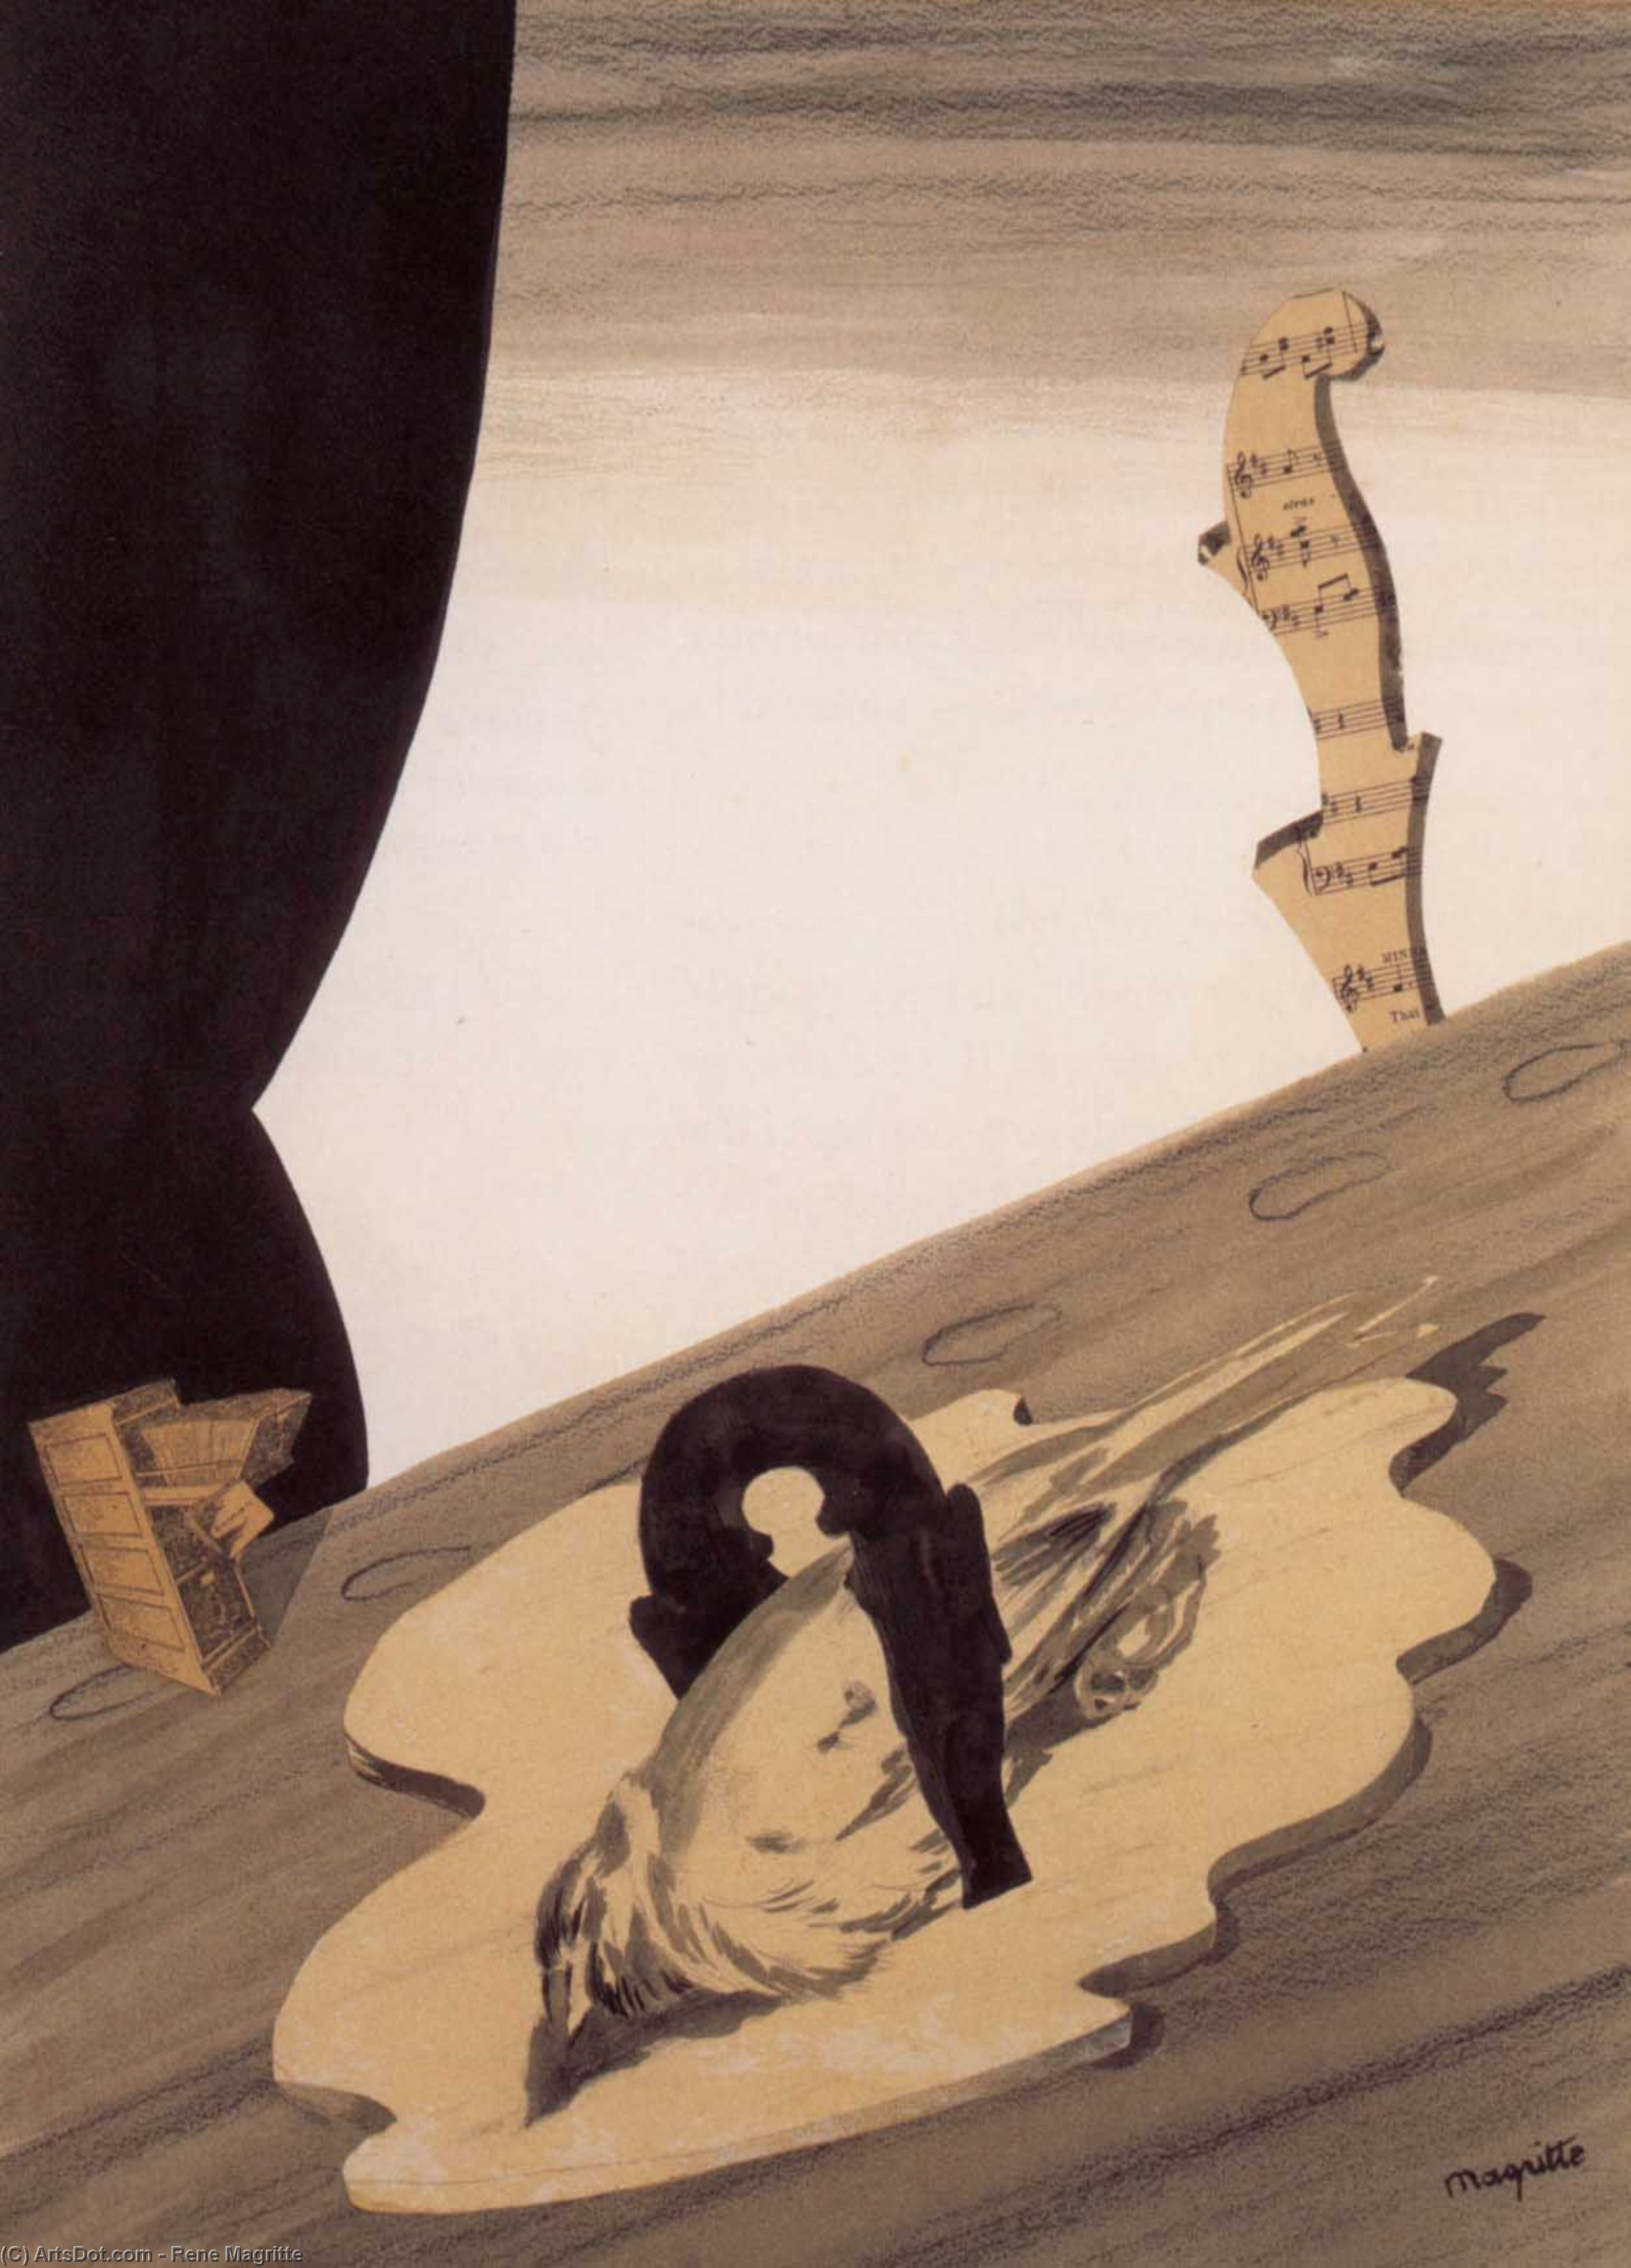 Wikioo.org - Bách khoa toàn thư về mỹ thuật - Vẽ tranh, Tác phẩm nghệ thuật Rene Magritte - Untitled